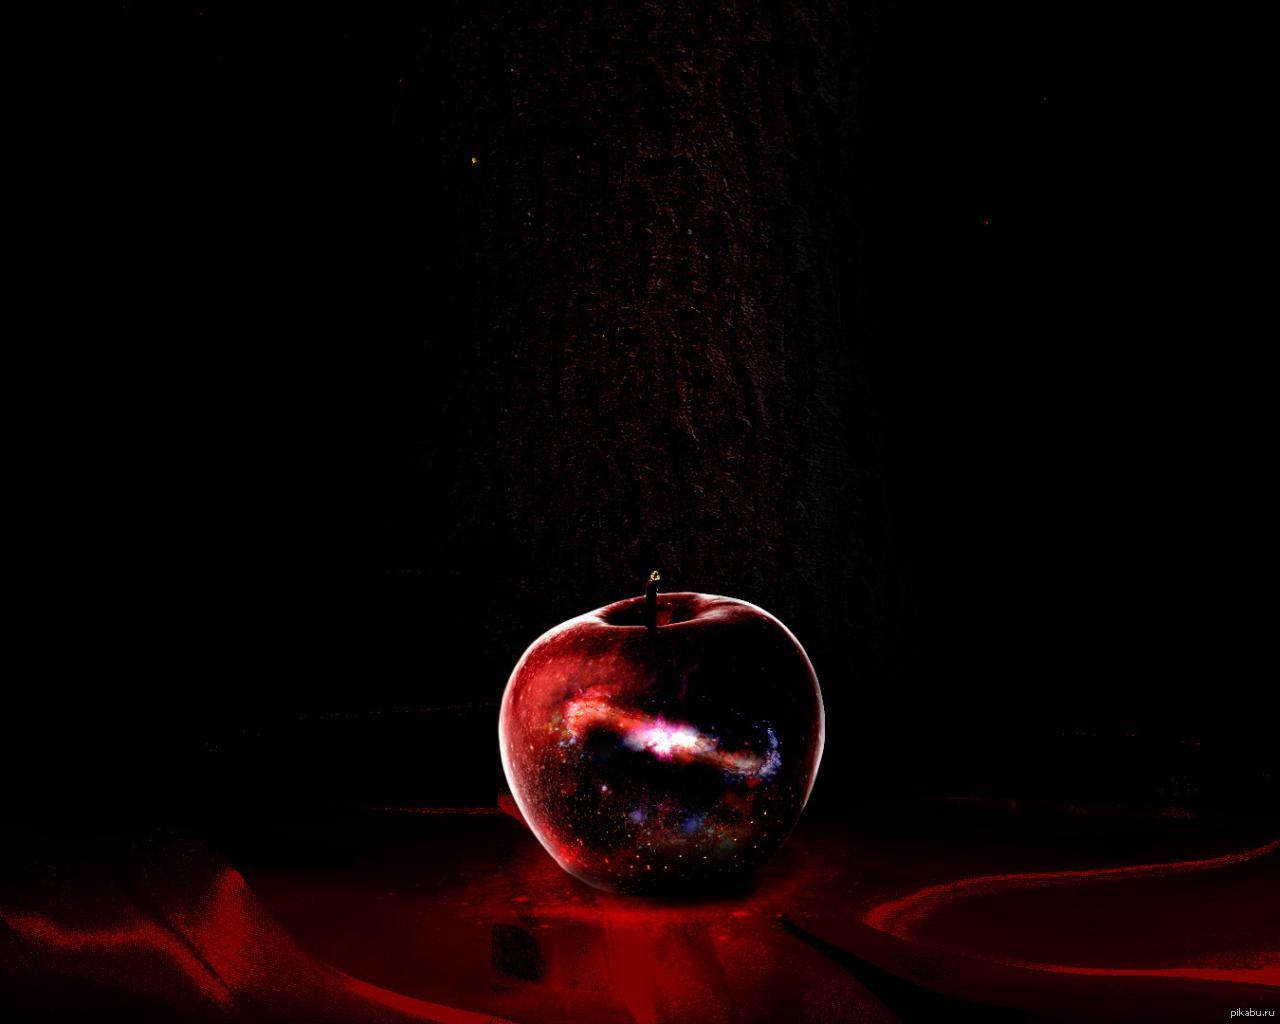 Яблоко на черном фоне. Яблоко на темном фоне. Красное яблоко на черном фоне. Красные предметы на темном фоне.